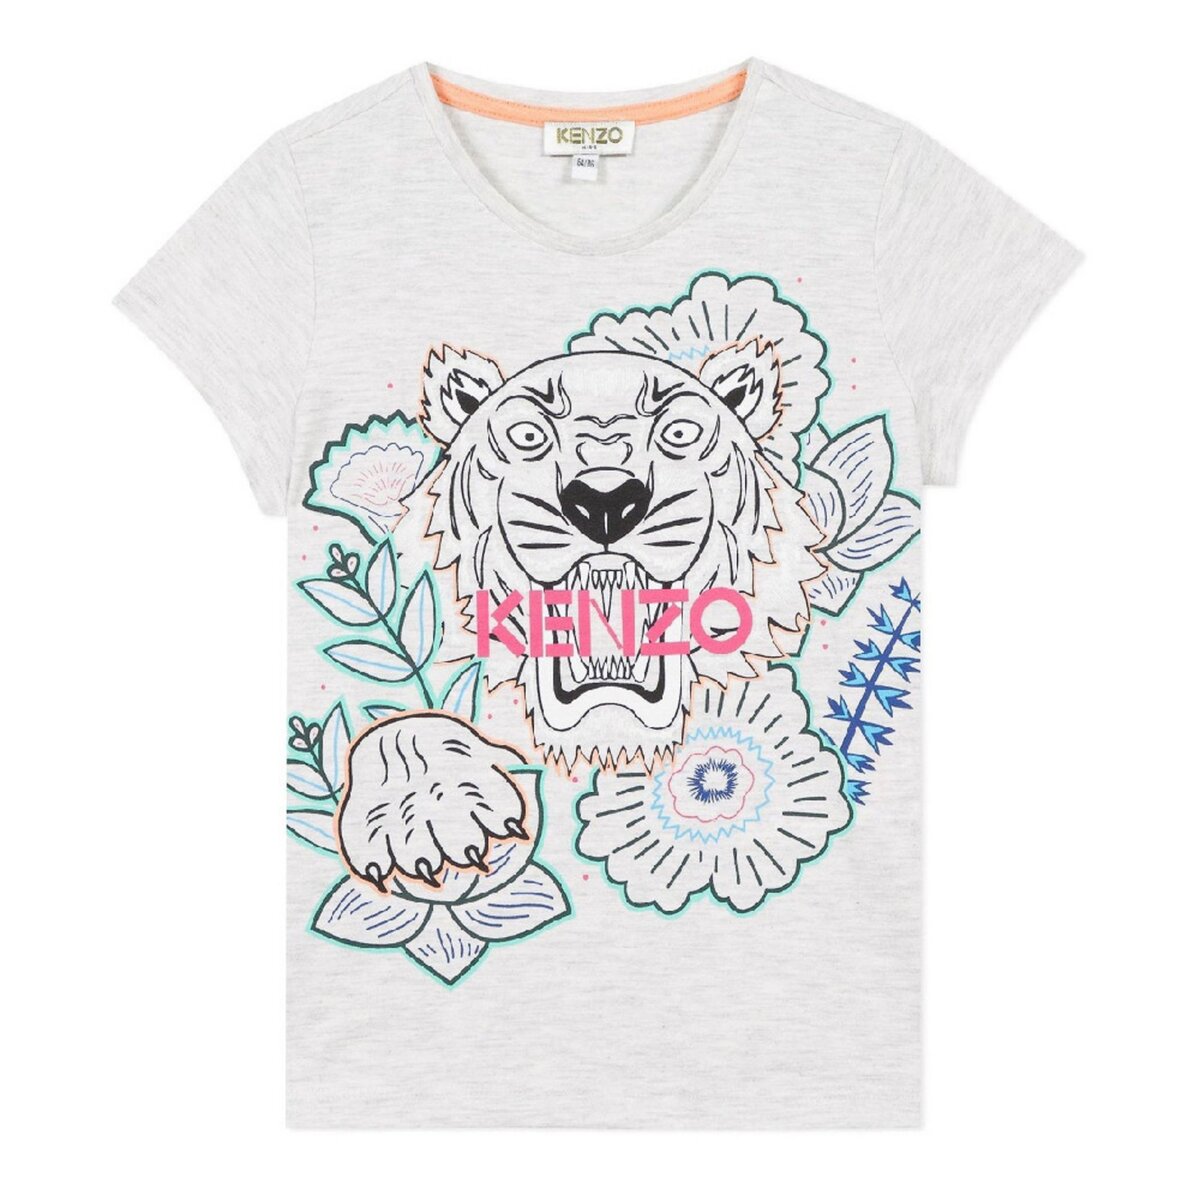 KENZO T-shirt Gris Fille Kenzo Tiger JG 2